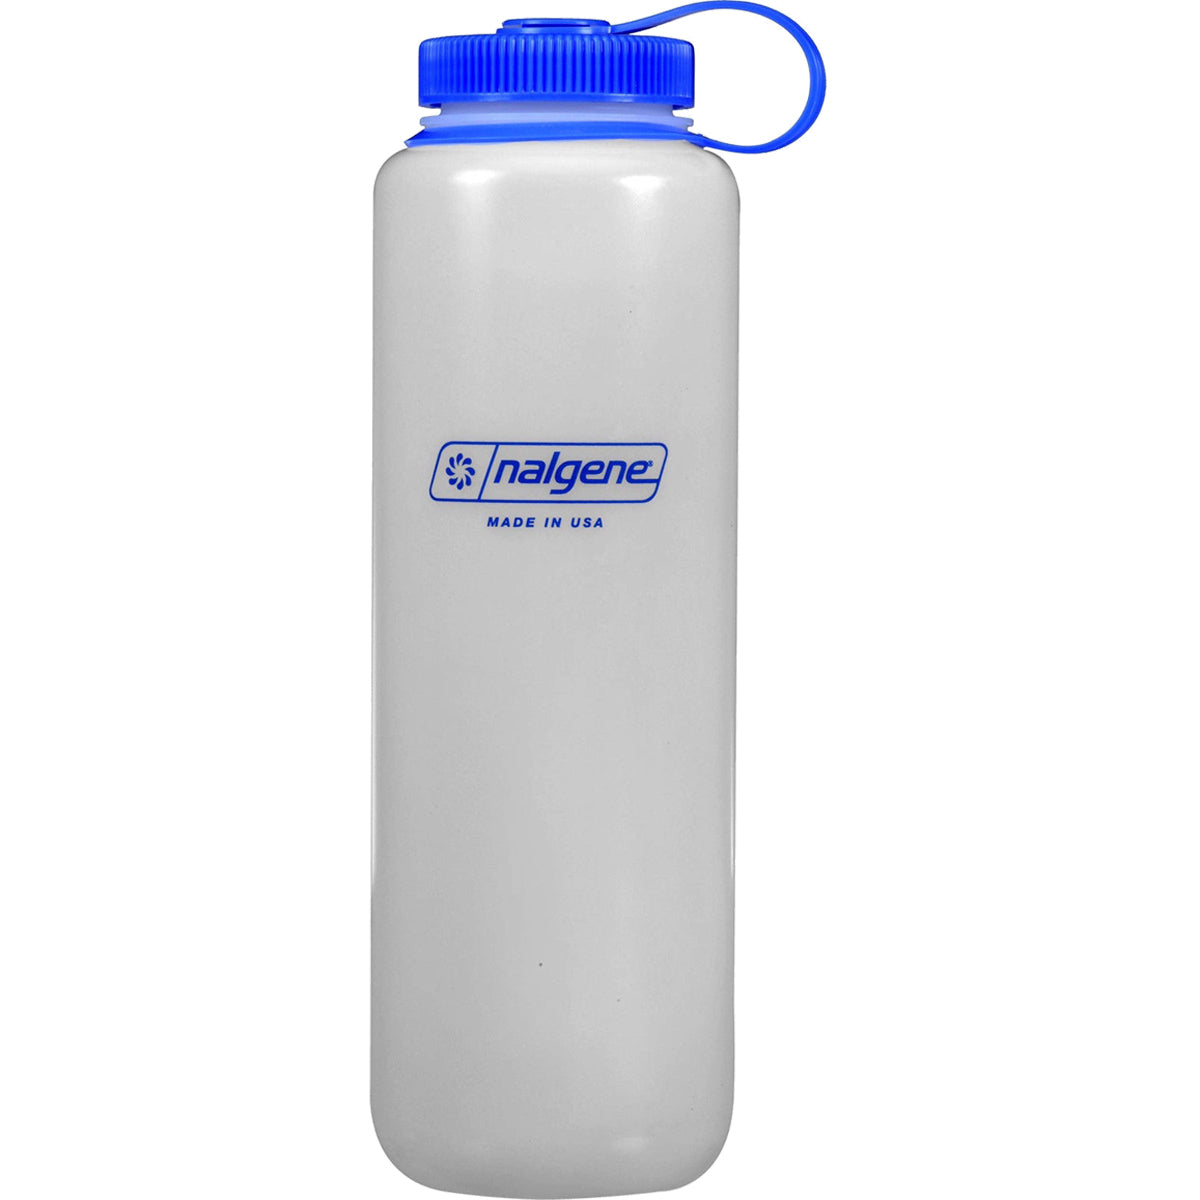 Nalgene Ultralite Wide Mouth Round Loop Top Water Bottle - 48 oz. - Clear/Blue Nalgene